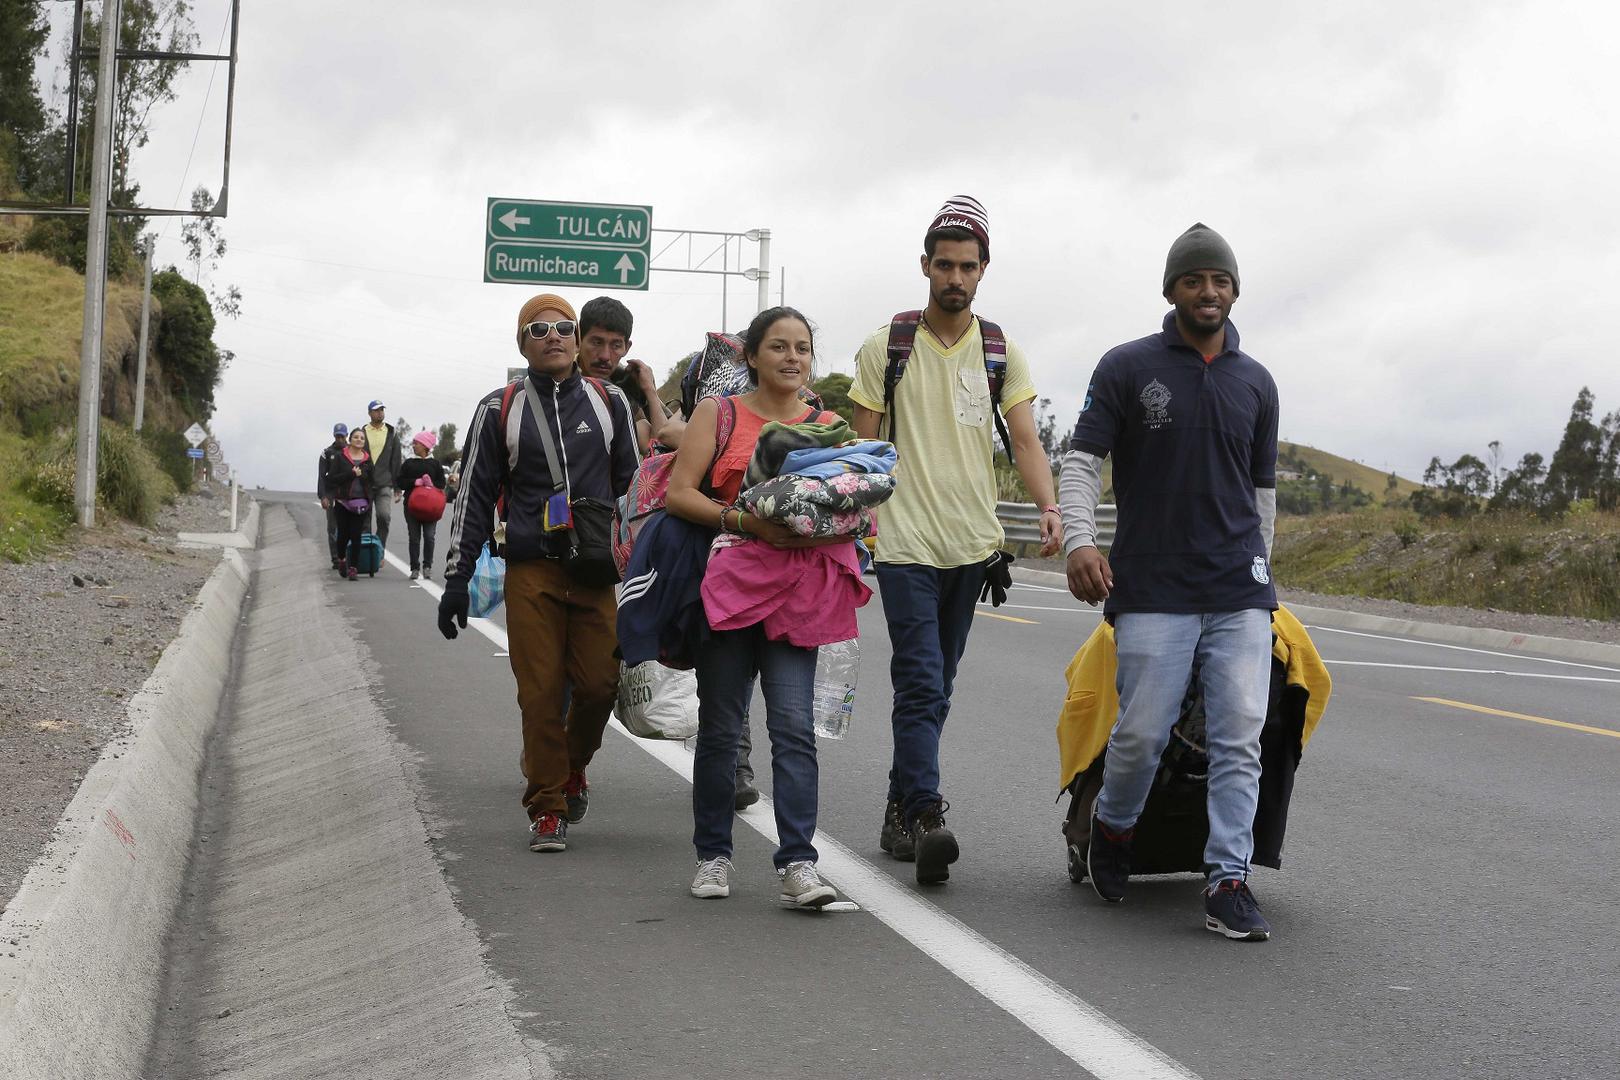 Venezolanos sin pasaporte caminan por la carretera Panamericana después de cruzar el Puente internacional de Rumichaca desde Colombia, antes de llegar a otro puesto de control migratorio, en Rumichaca, Ecuador, el domingo 19 de agosto de 2018. 